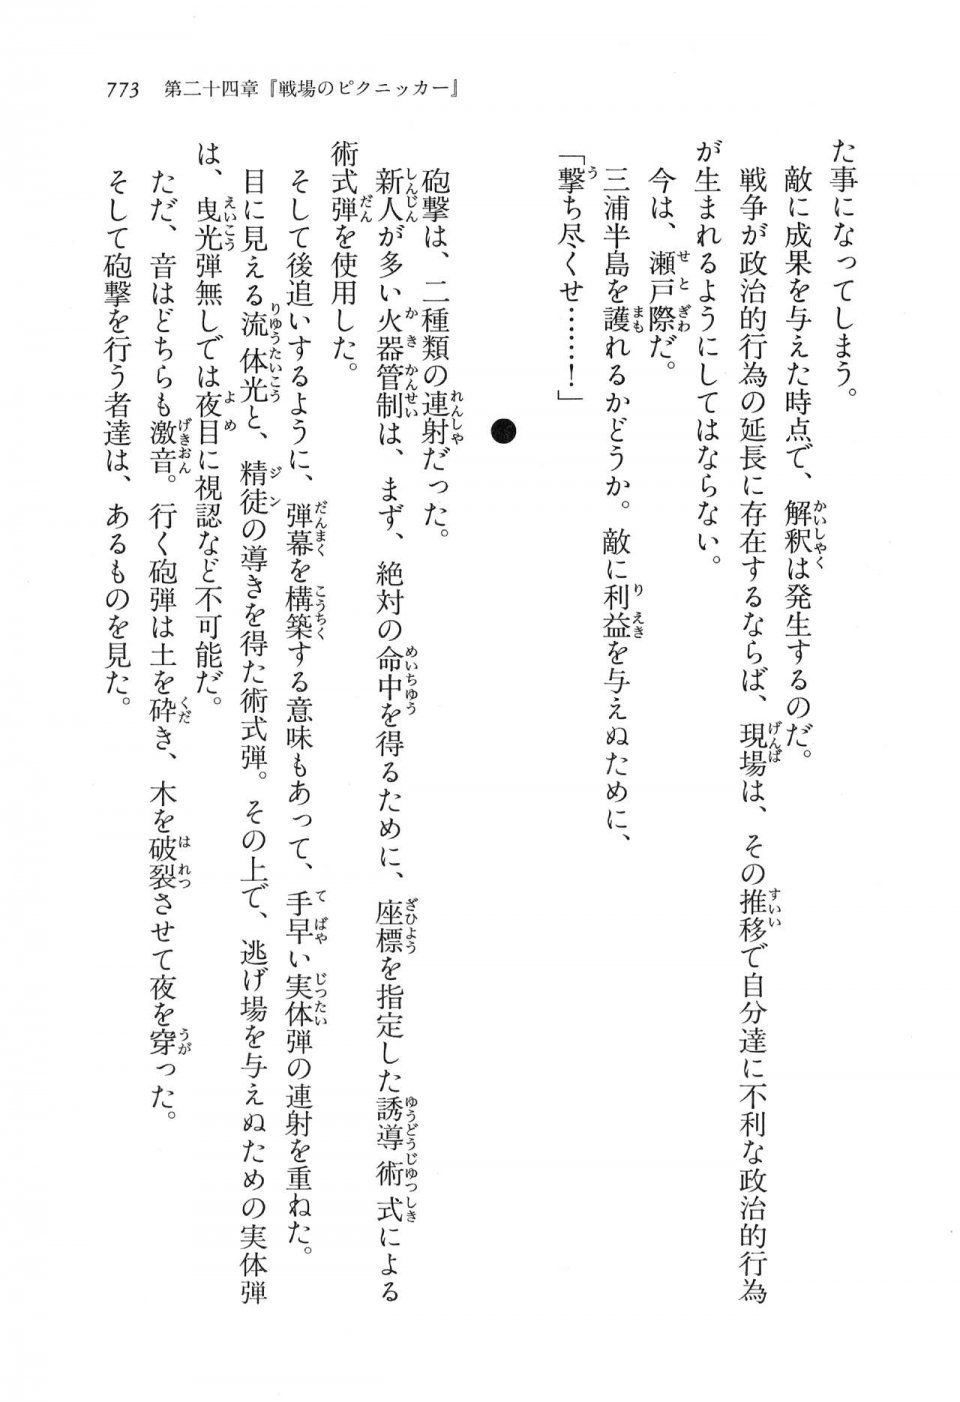 Kyoukai Senjou no Horizon LN Vol 16(7A) - Photo #773